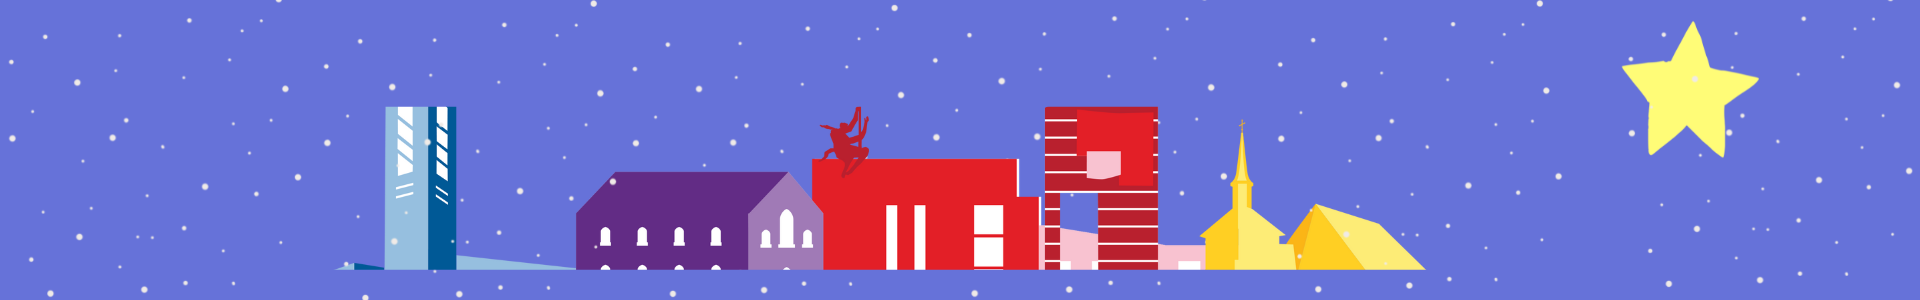 Nettisivun joulukansi: jouluilmeen sininen tausta lumisateella, edessä uuden Mikaelin kirkot graafisina kuvina, joulutähti